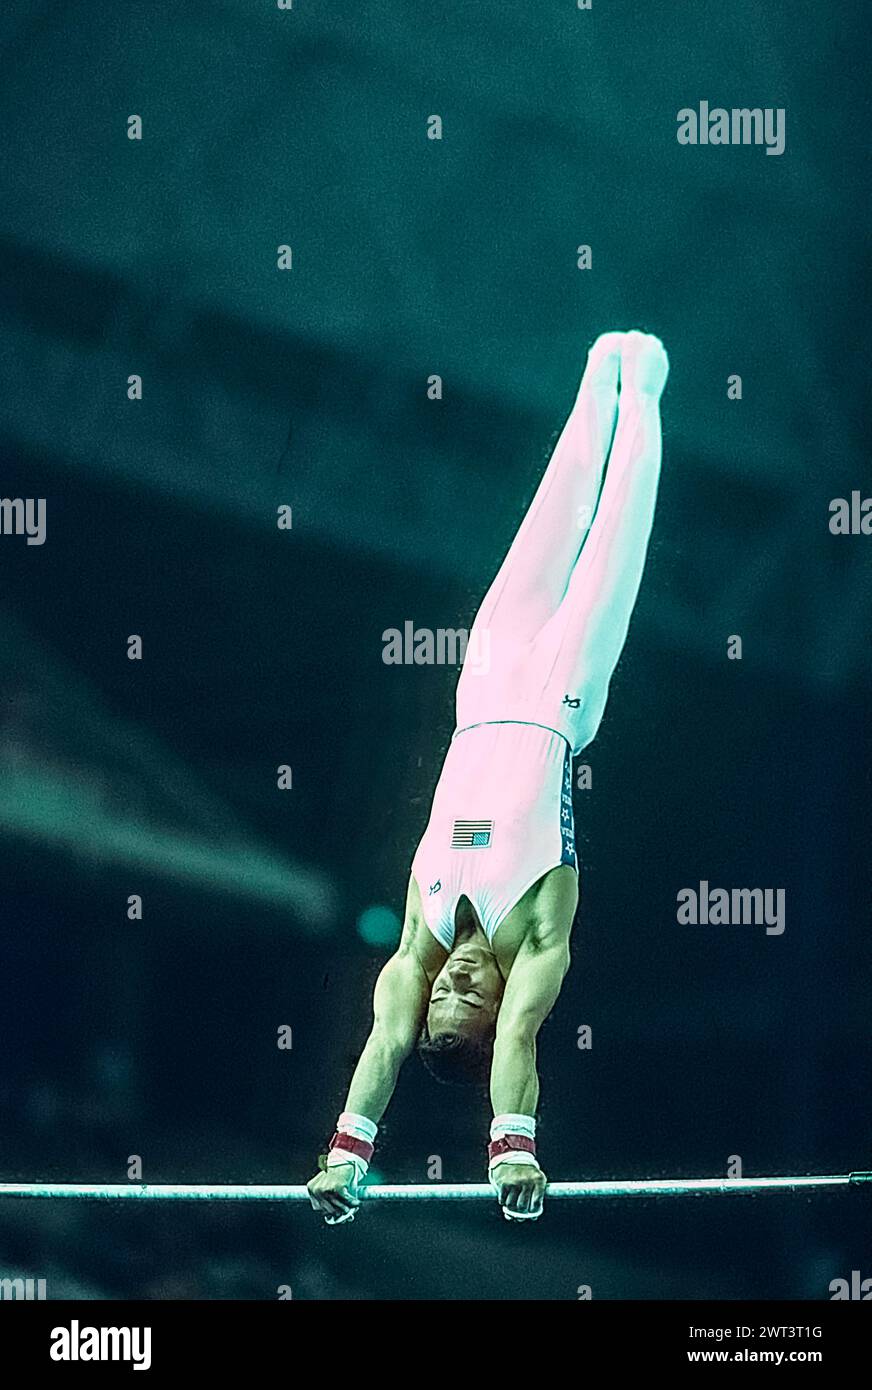 Scott Keswick (États-Unis) en compétition dans l'équipe artistique masculine de gymnastique générale aux Jeux olympiques d'été de 1992. Banque D'Images